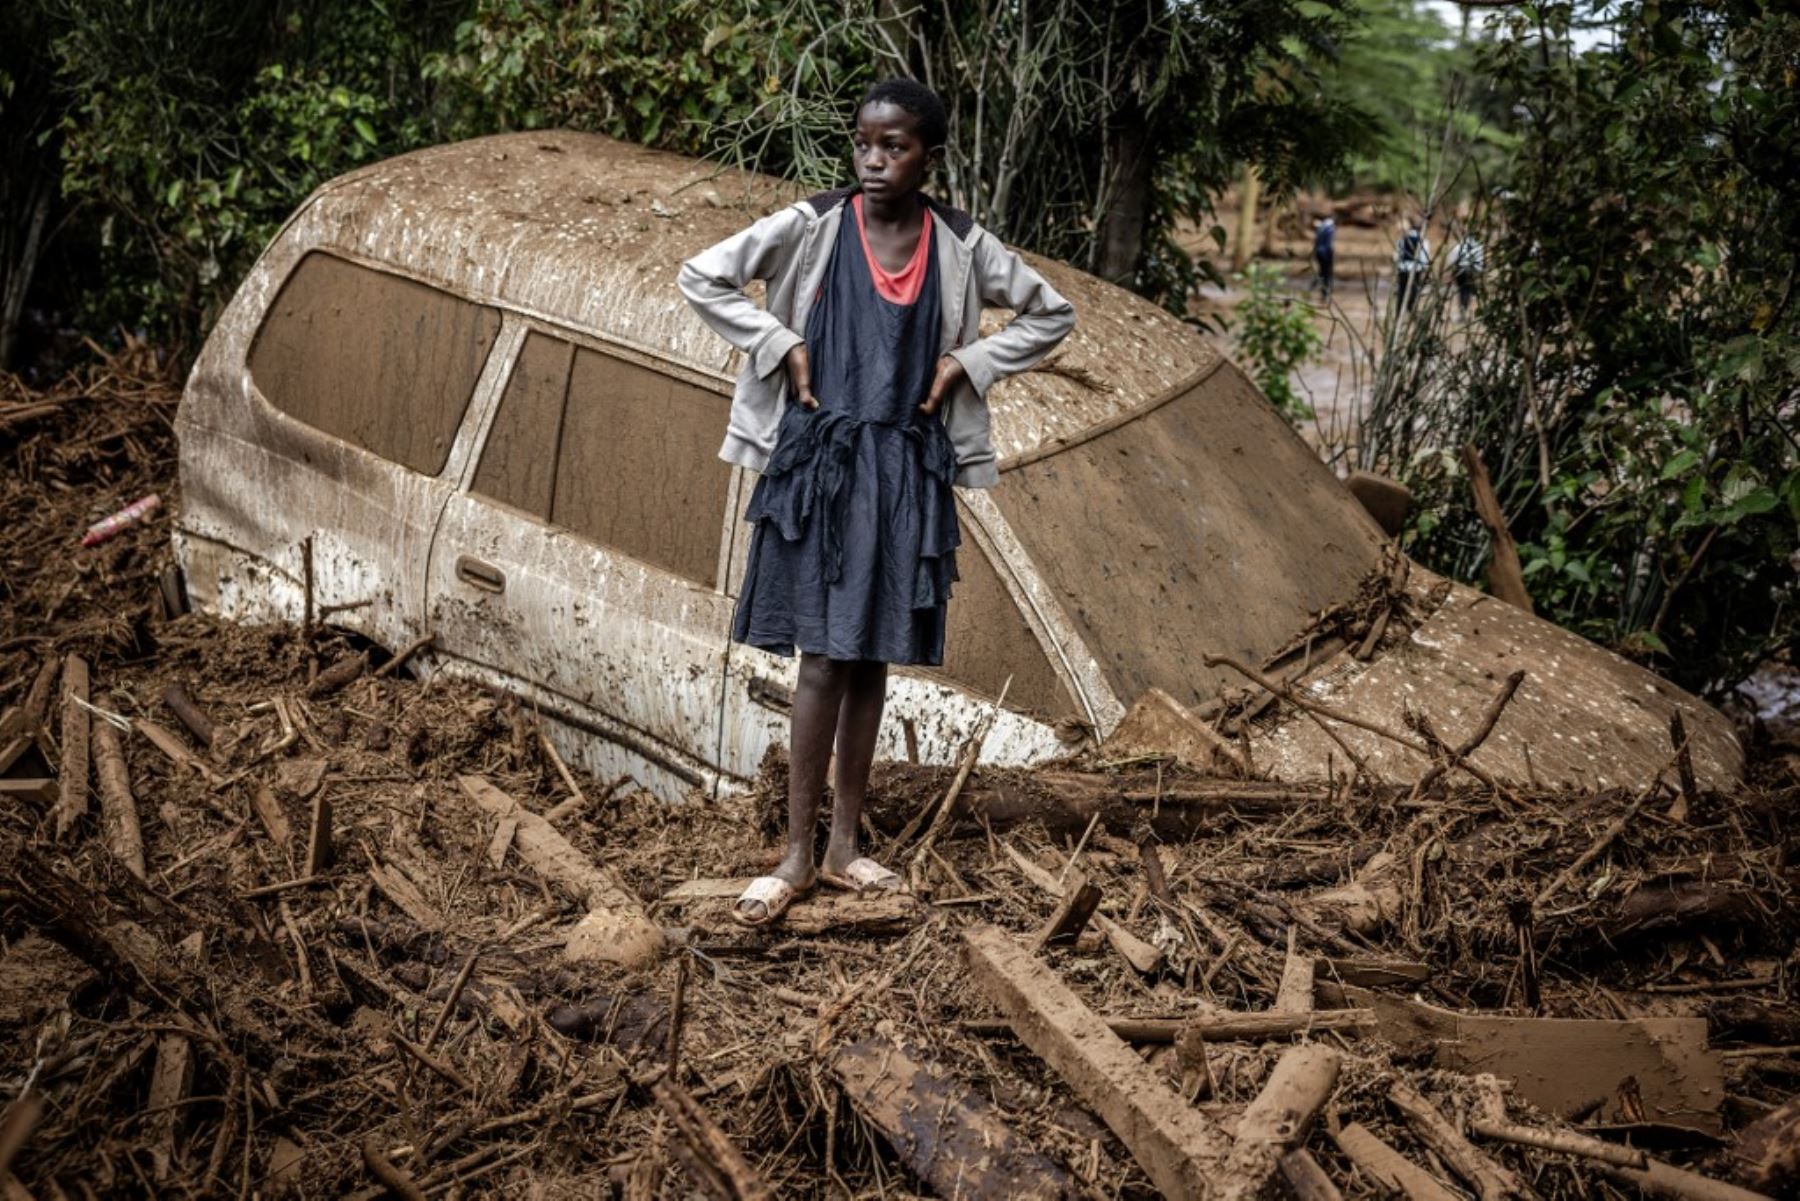 Una niña observa junto a un coche averiado enterrado en barro en una zona muy afectada por lluvias torrenciales e inundaciones repentinas en la aldea de Kamuchiri, cerca de Mai Mahiu. Al menos 45 personas murieron cuando una presa se desbordó. cerca de una ciudad en el Valle del Rift de Kenia. Foto: AFP